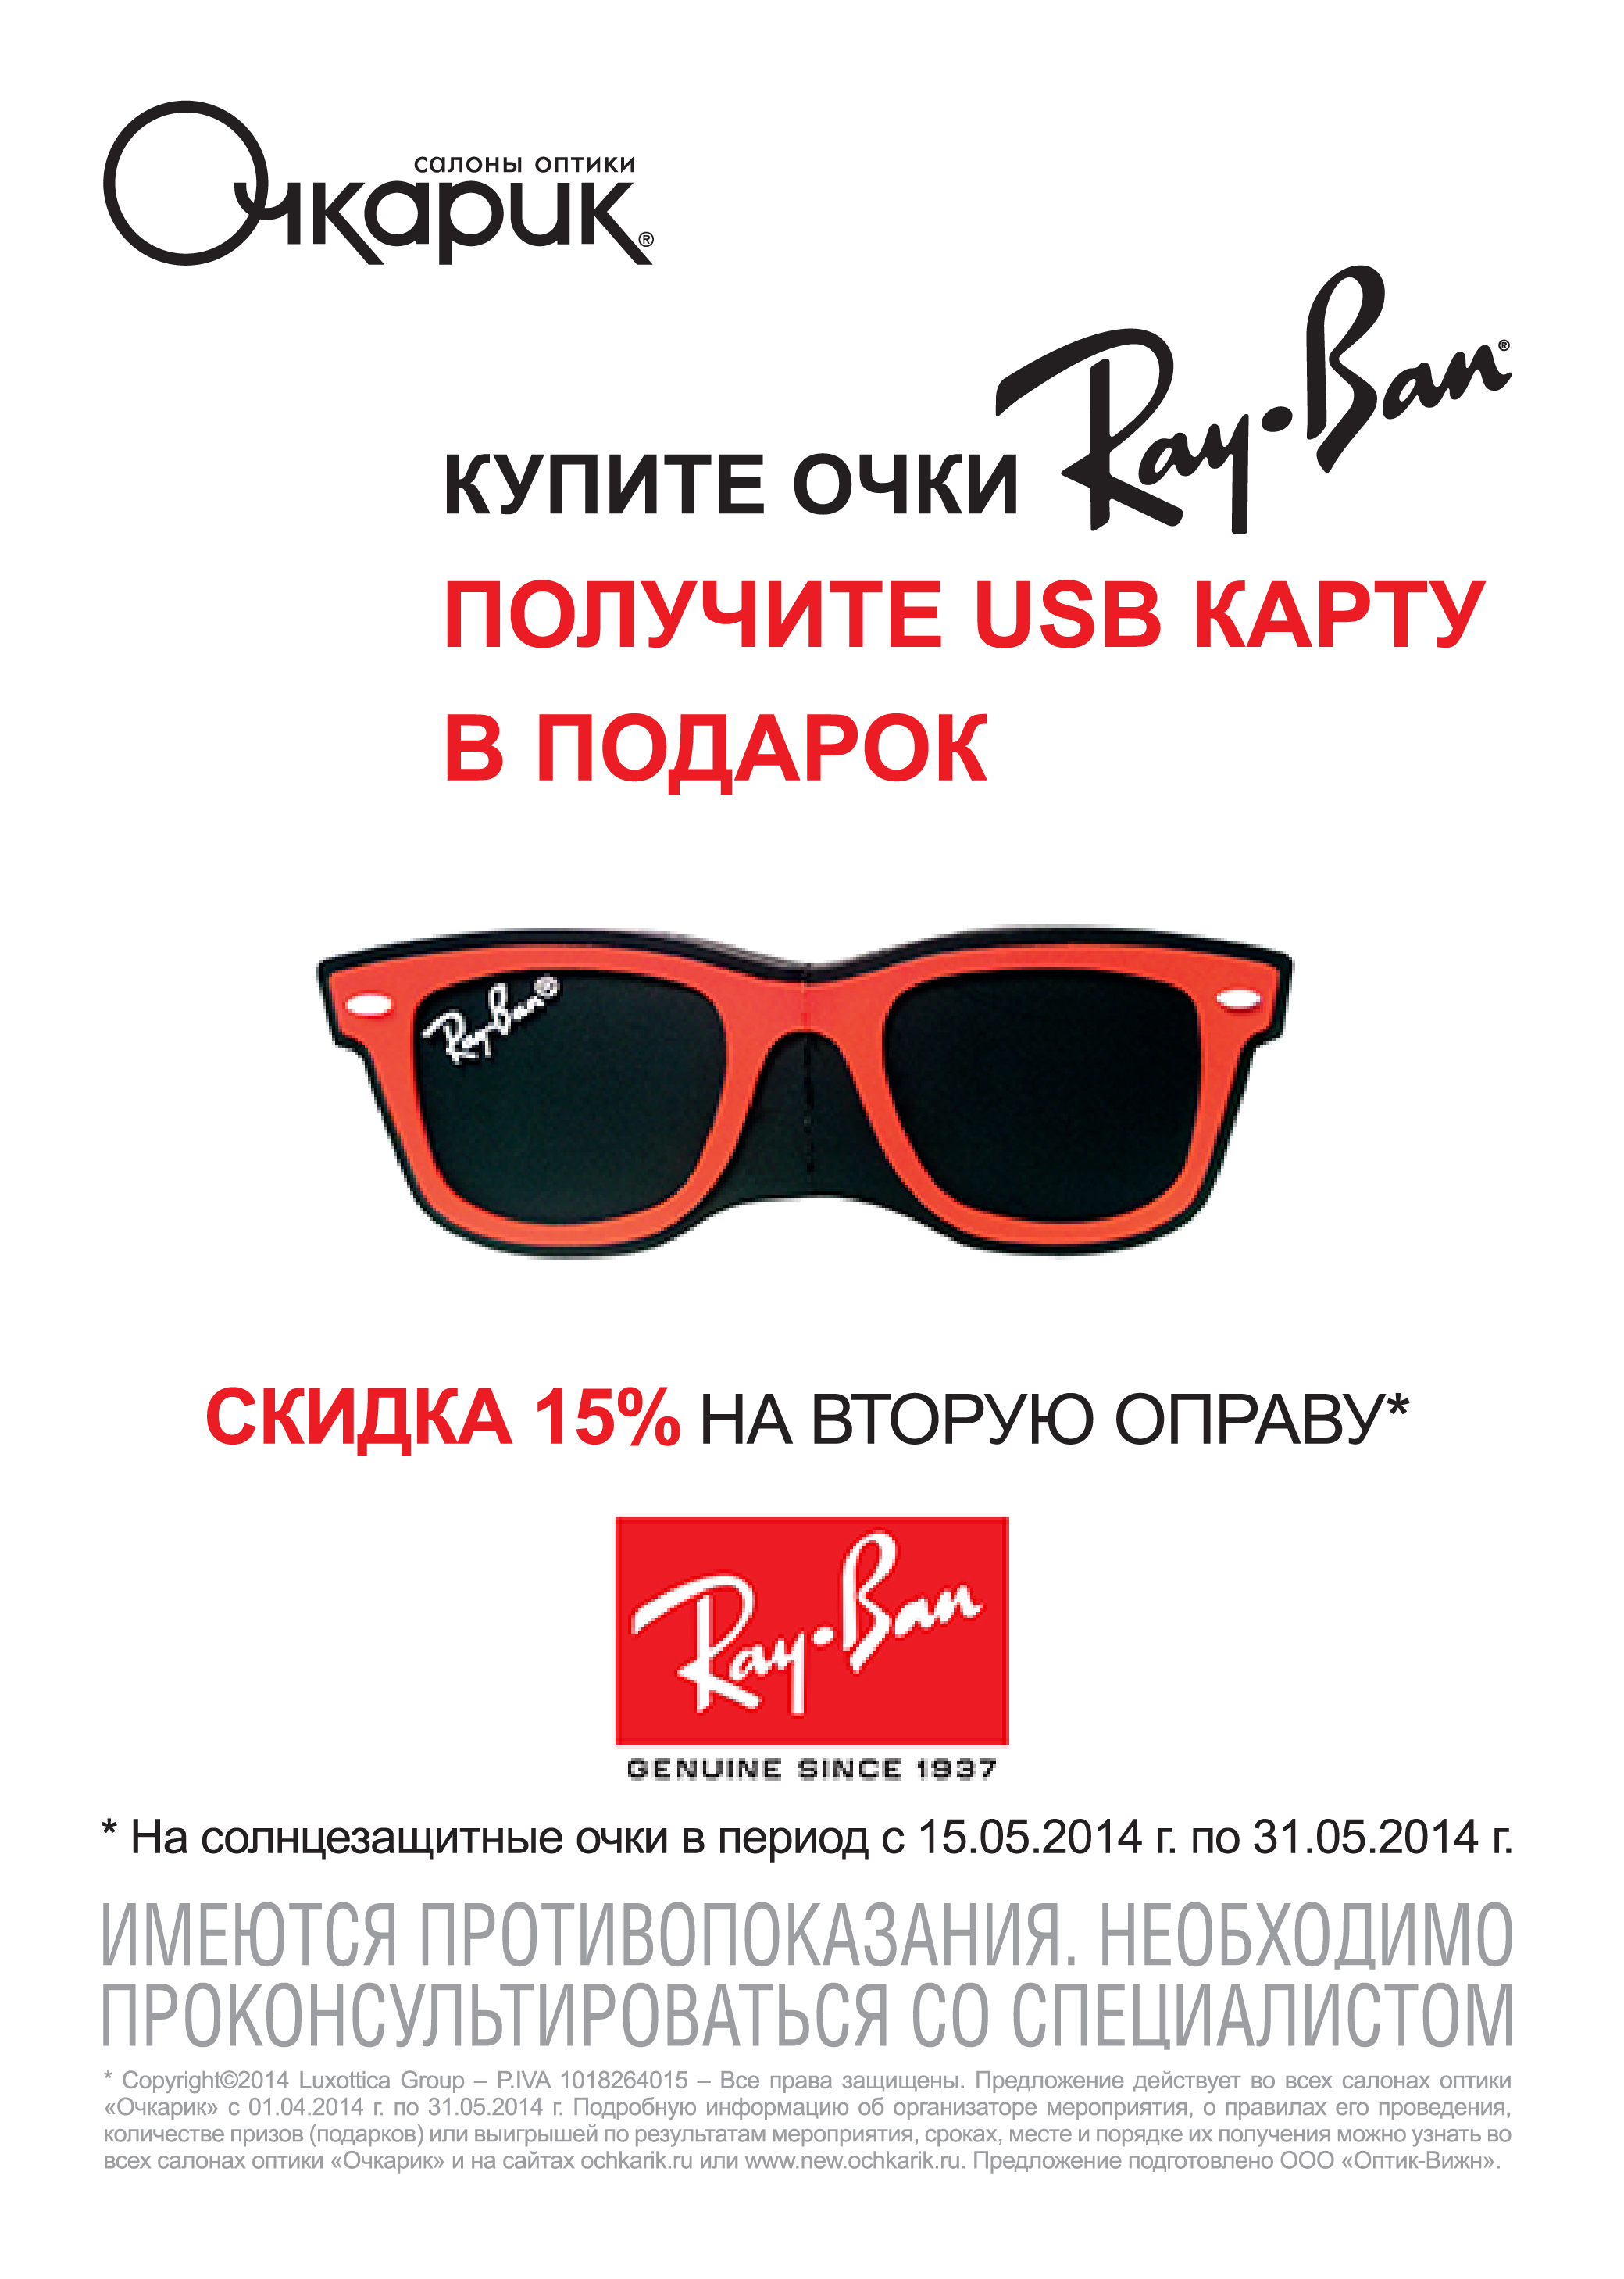 Получите в подарок USB-карту и скидку 15% на вторую оправу при покупке очков Ray-Ban в сети Очкарик до 31 мая 2014 года.